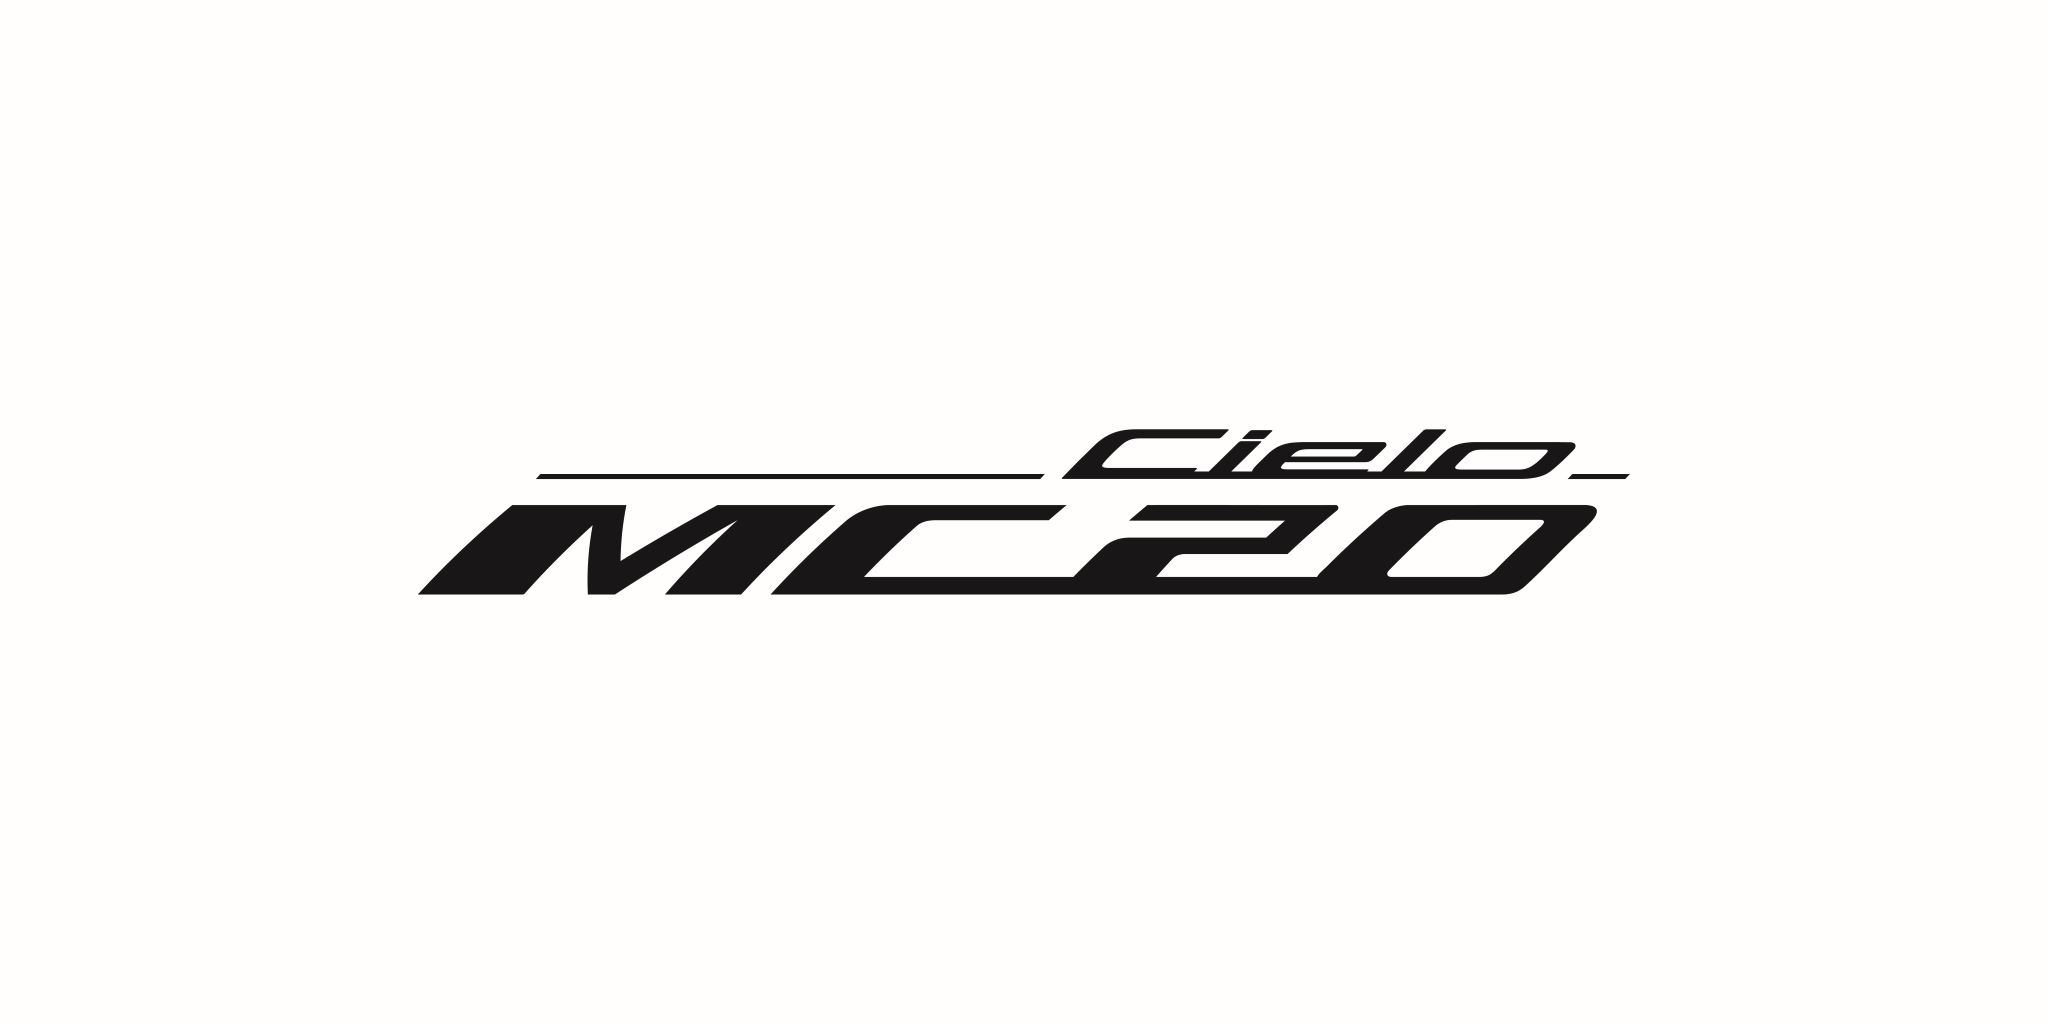 Teaser image of the Maserati MC20 Cielo logo